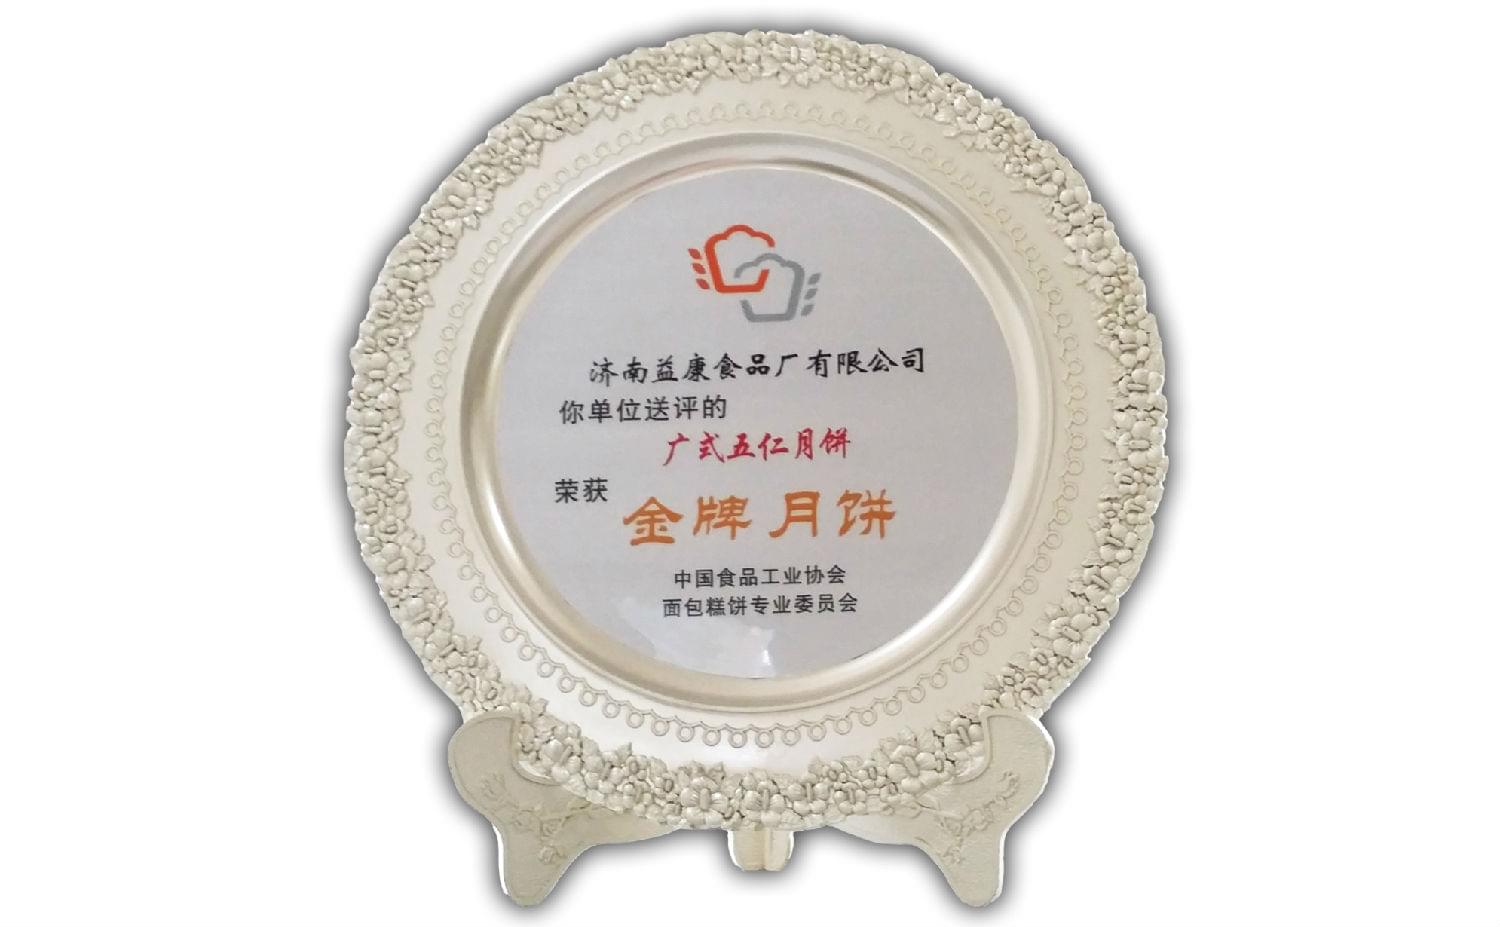 2014年6月广式五仁月饼被评为“月饼”